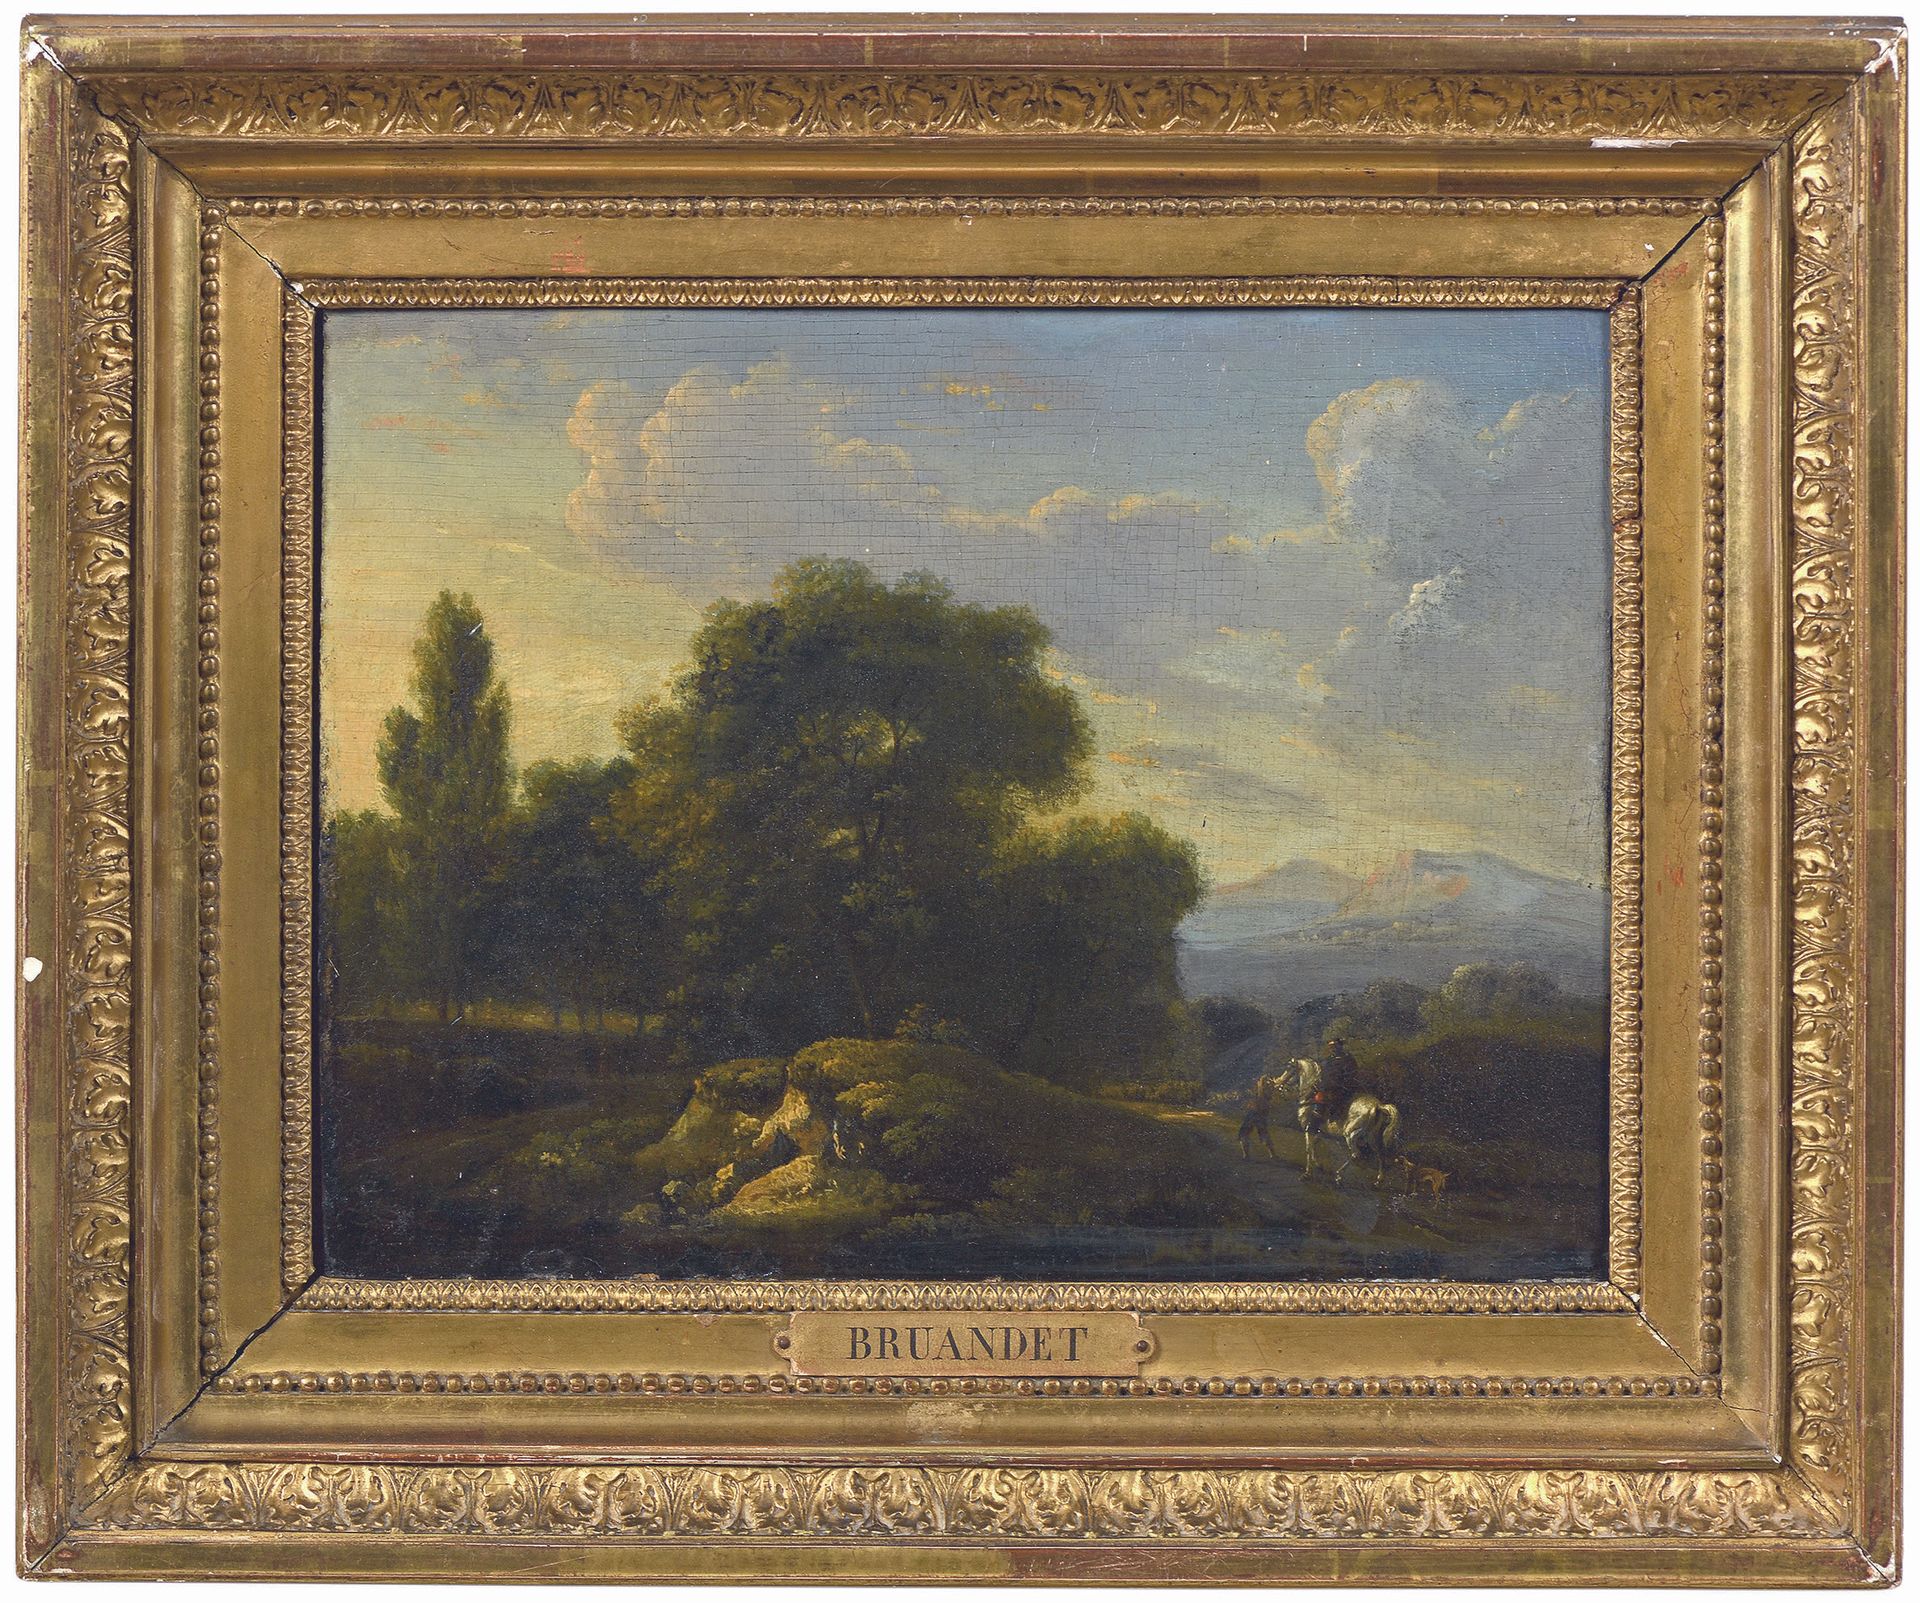 Null 拉扎尔-布朗德 (1755-1804)
景观与人物
板上油彩。
(底部的小型修复物)。
23,6 x 30 cm